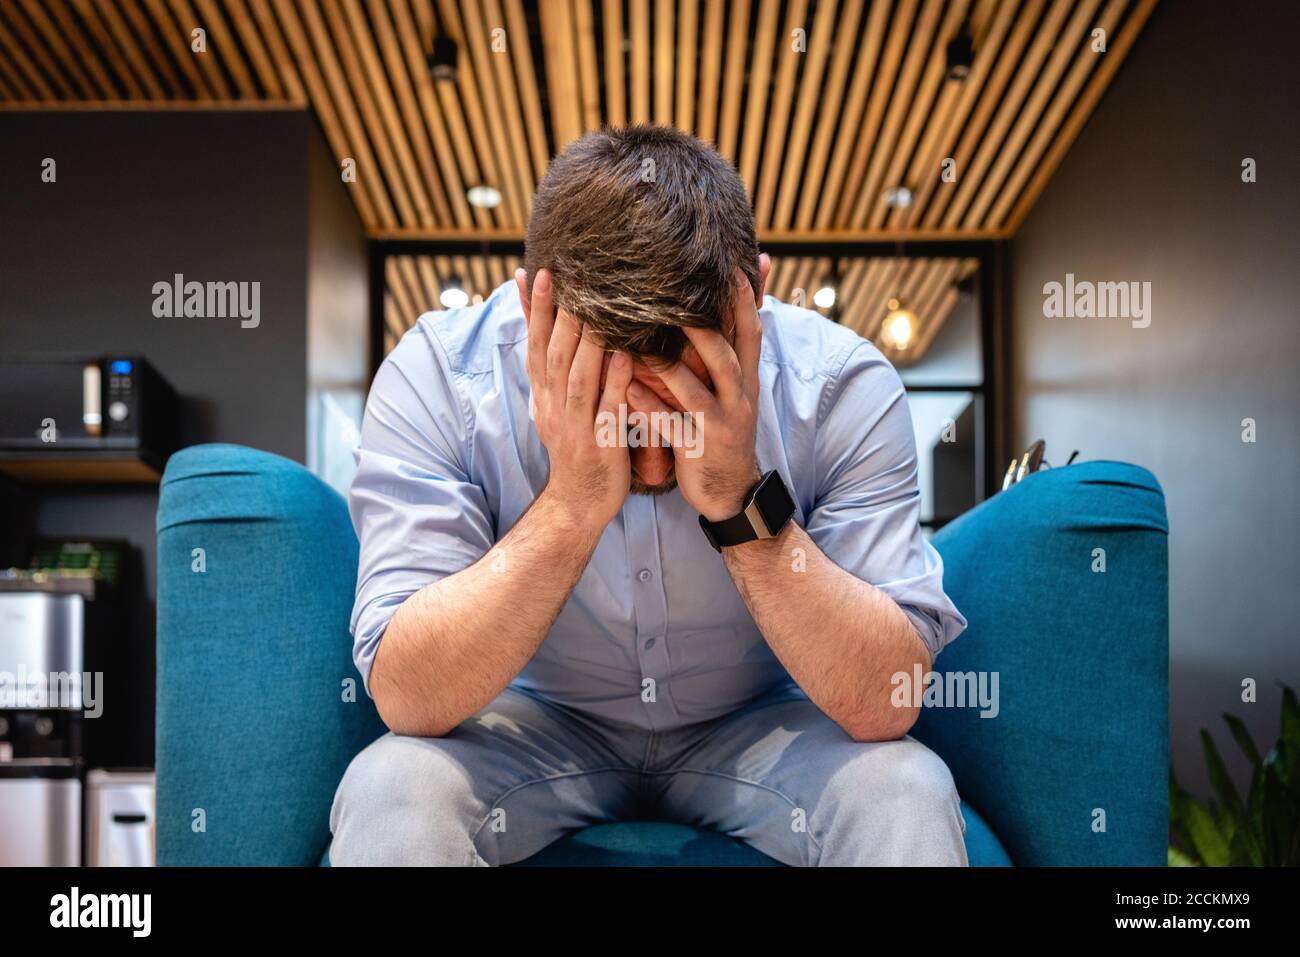 Besorgter Geschäftsmann mit Kopf in den Händen auf dem Sessel sitzen Bürocafeteria Stockfoto